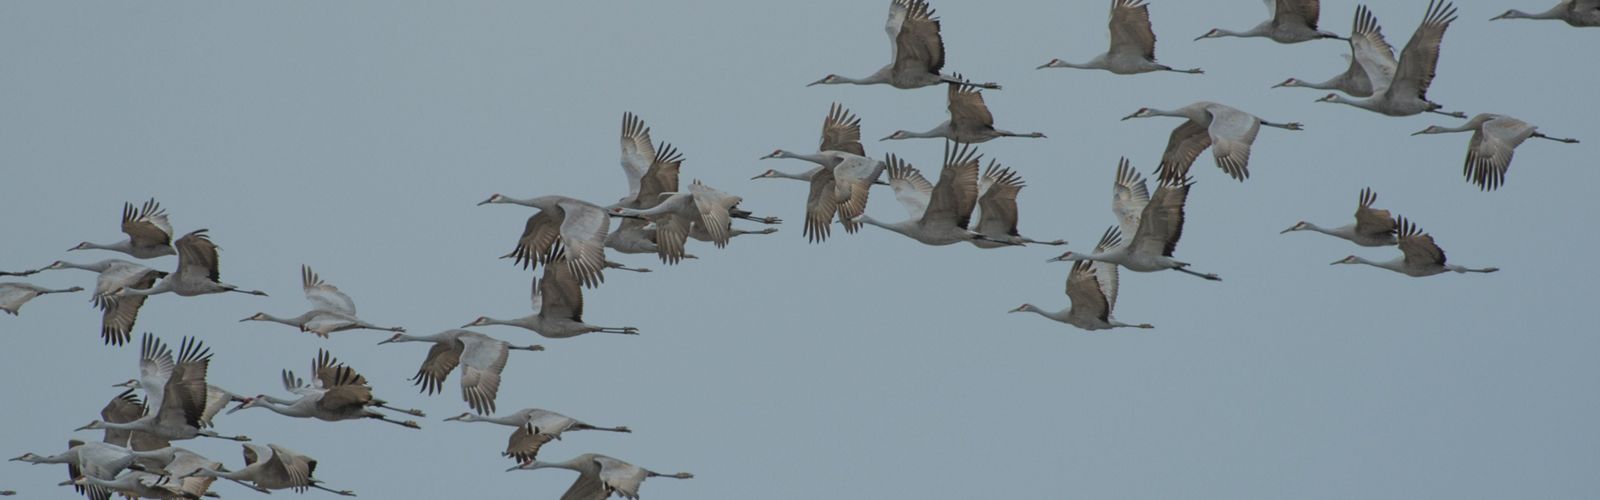 A flock of sandhill cranes flies across the sky.